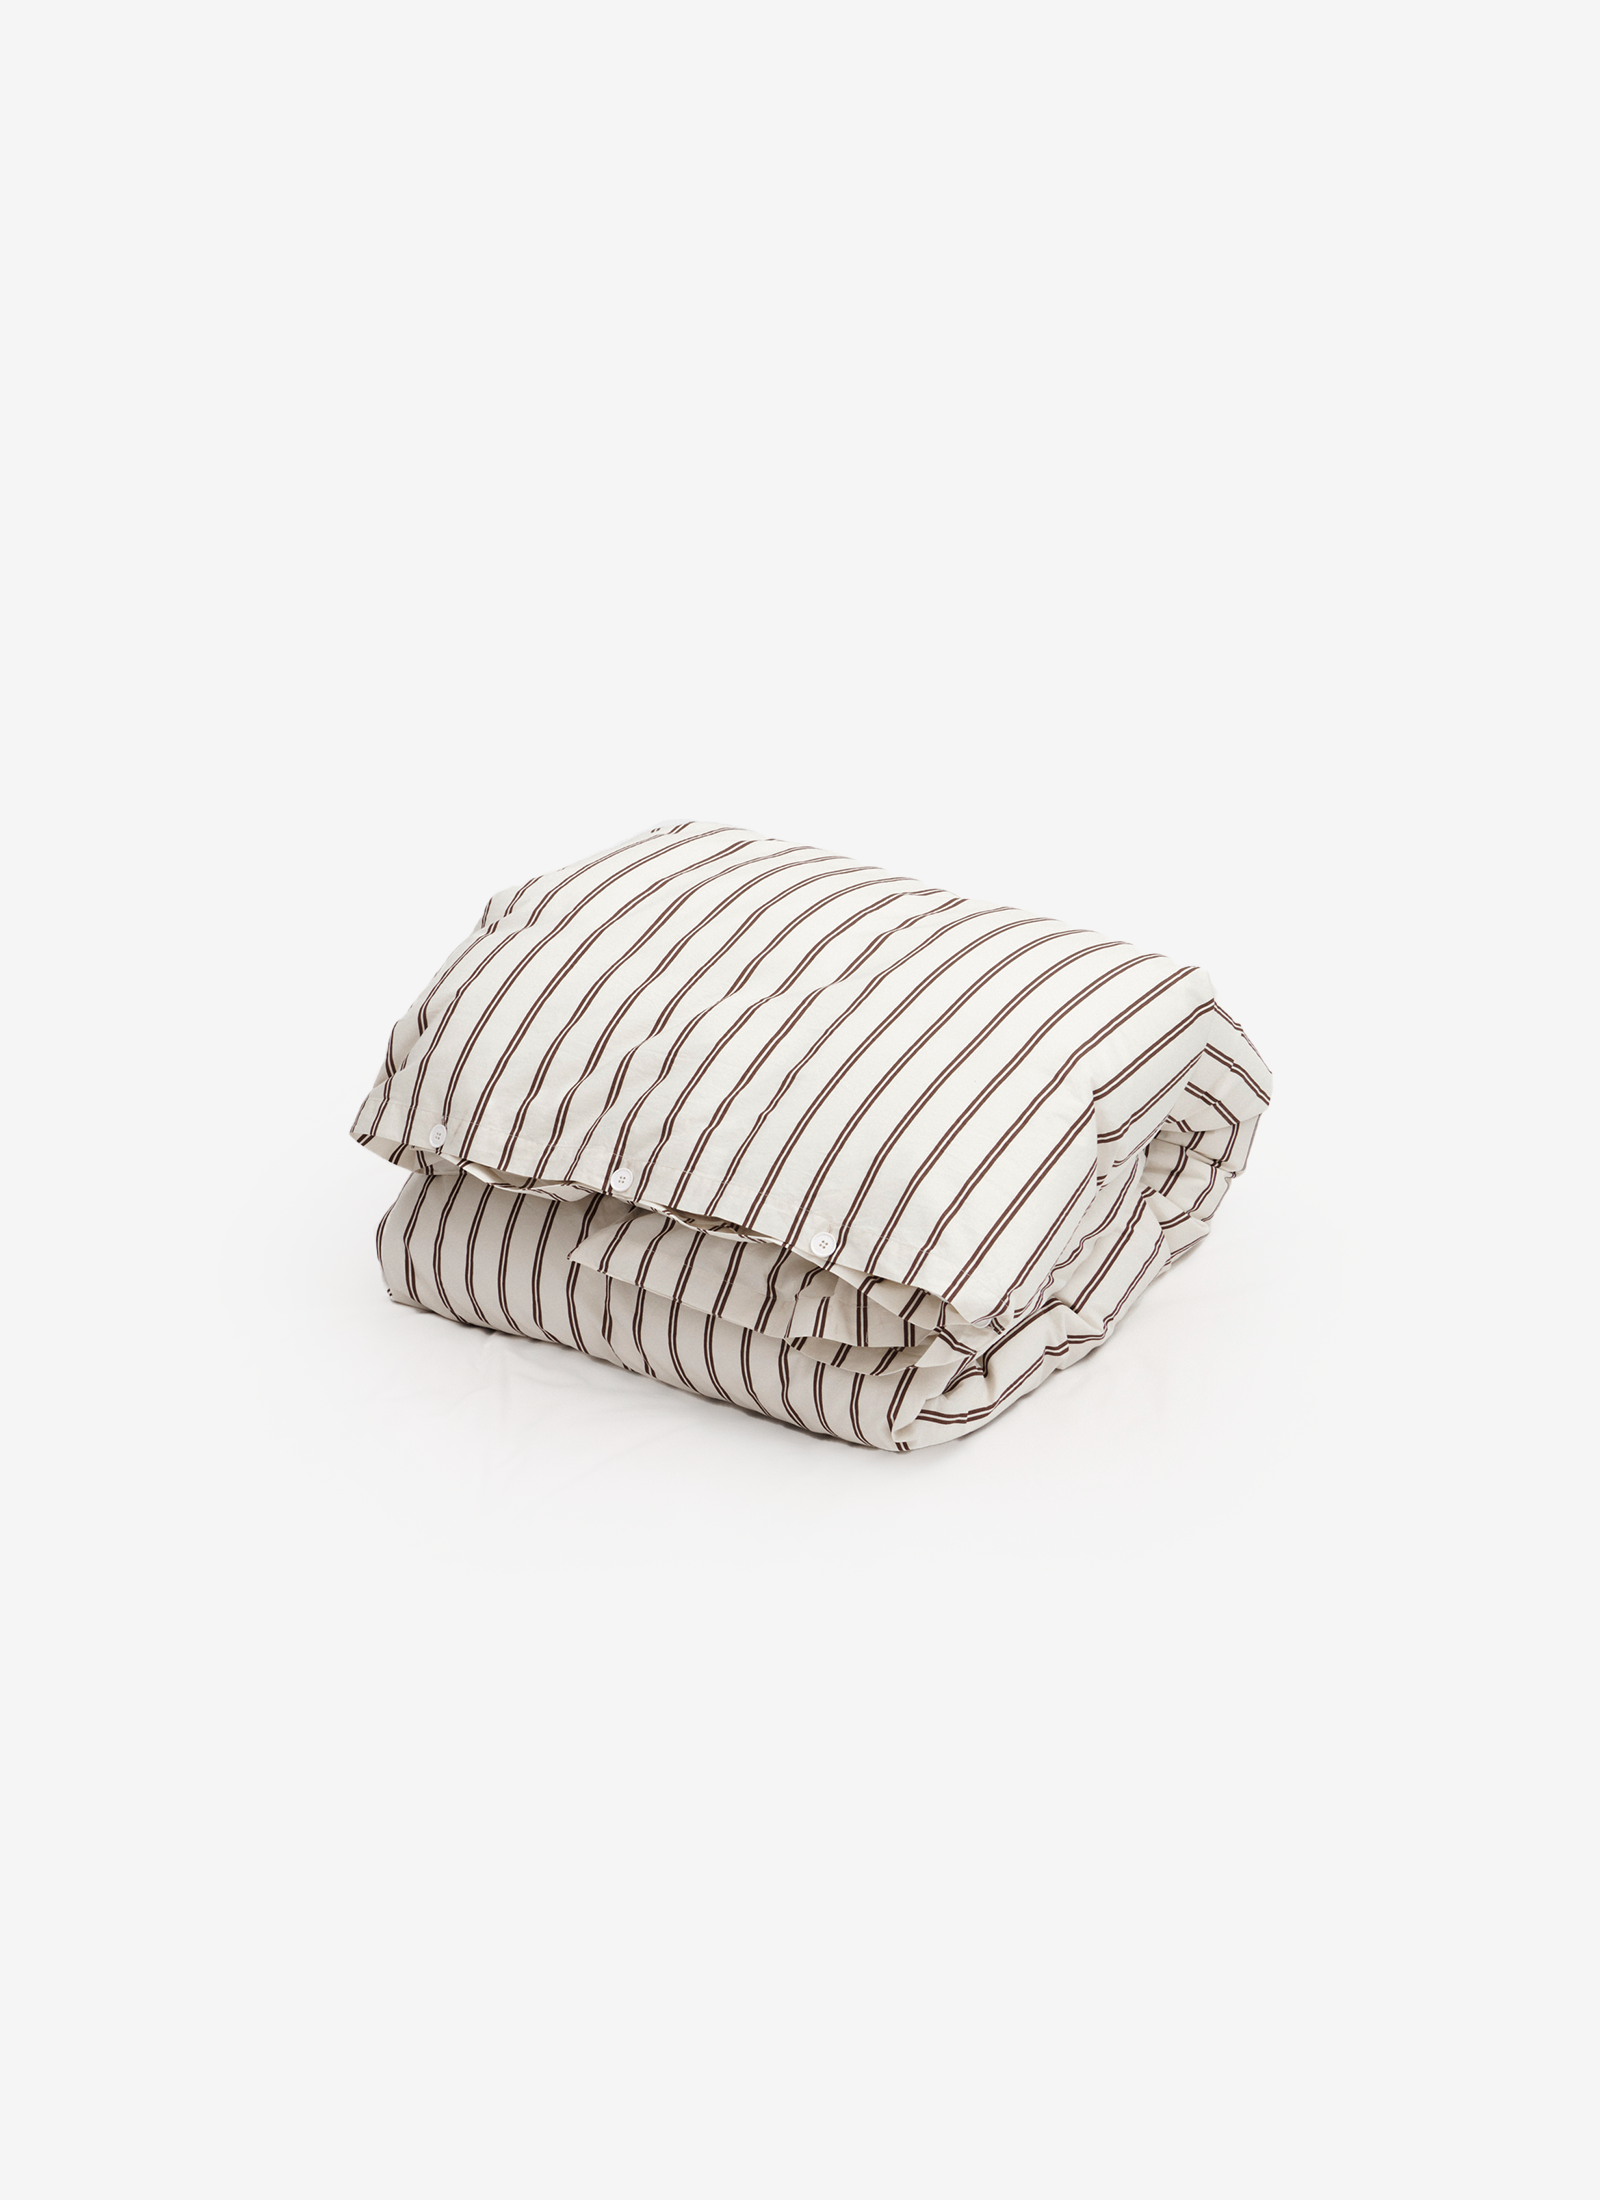 Duvet Cover in Hopper Stripes